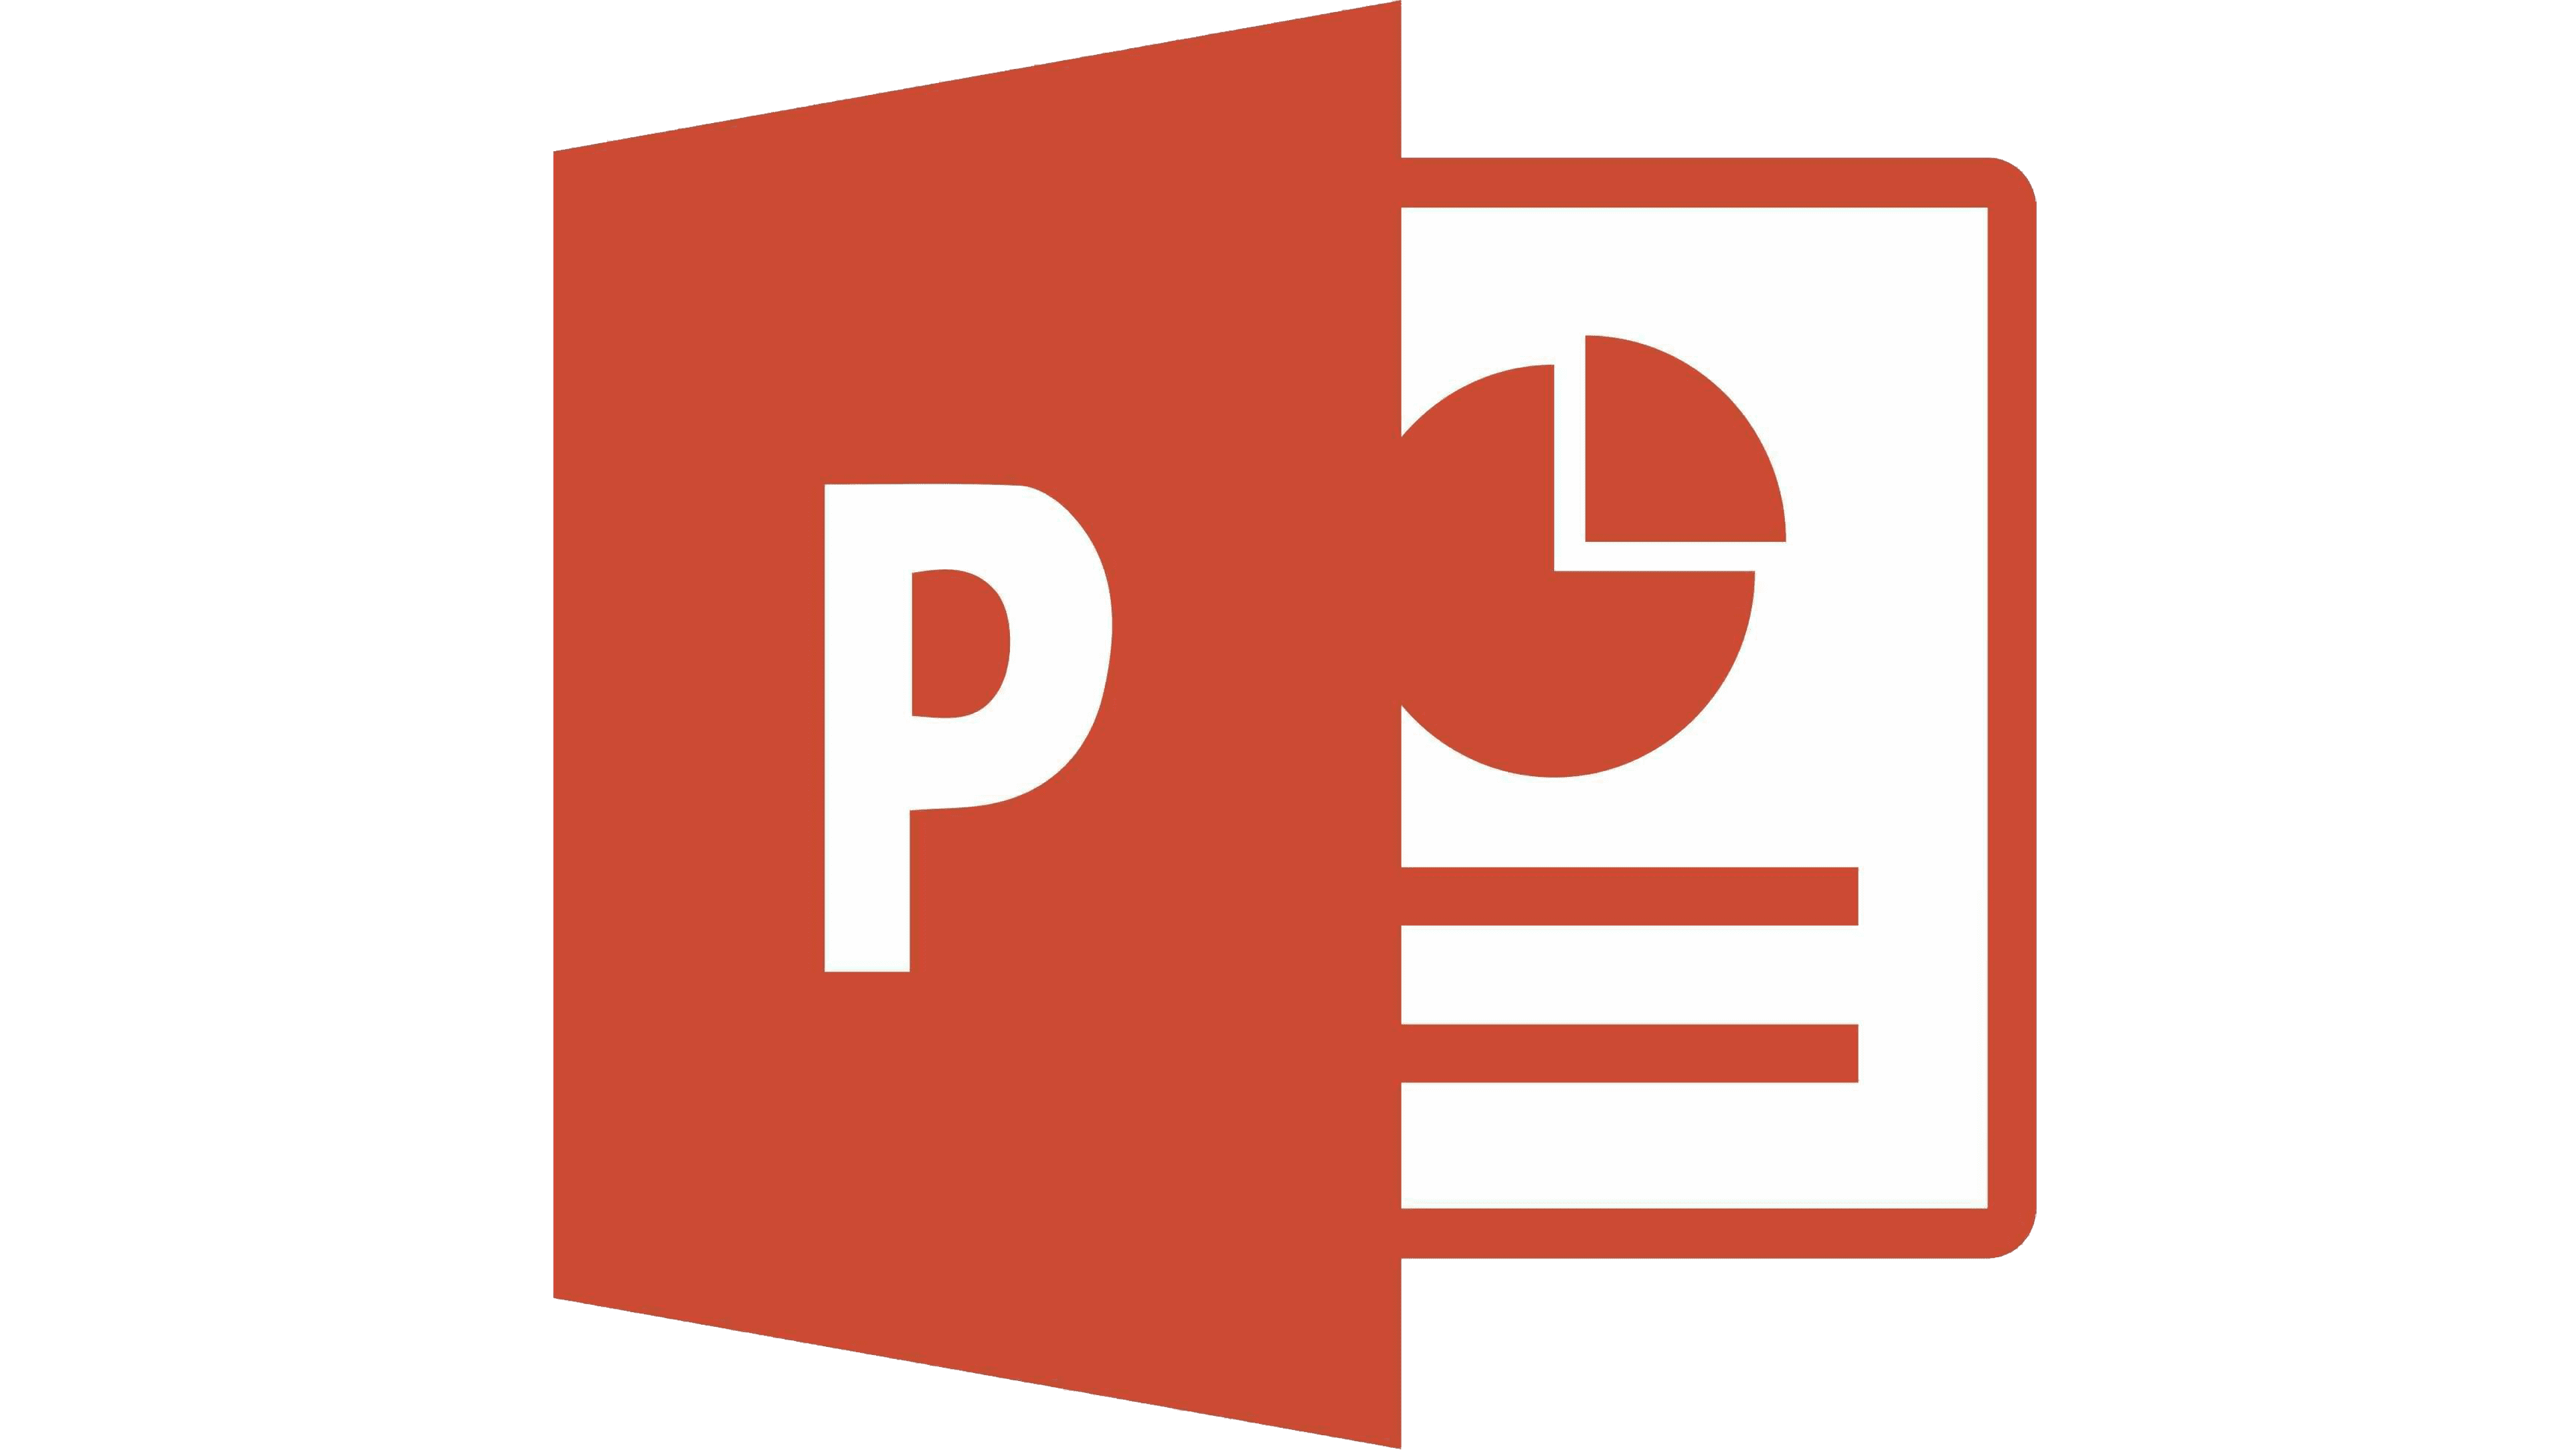 Logo de Microsoft PowerPoint la historia y el significado del logotipo